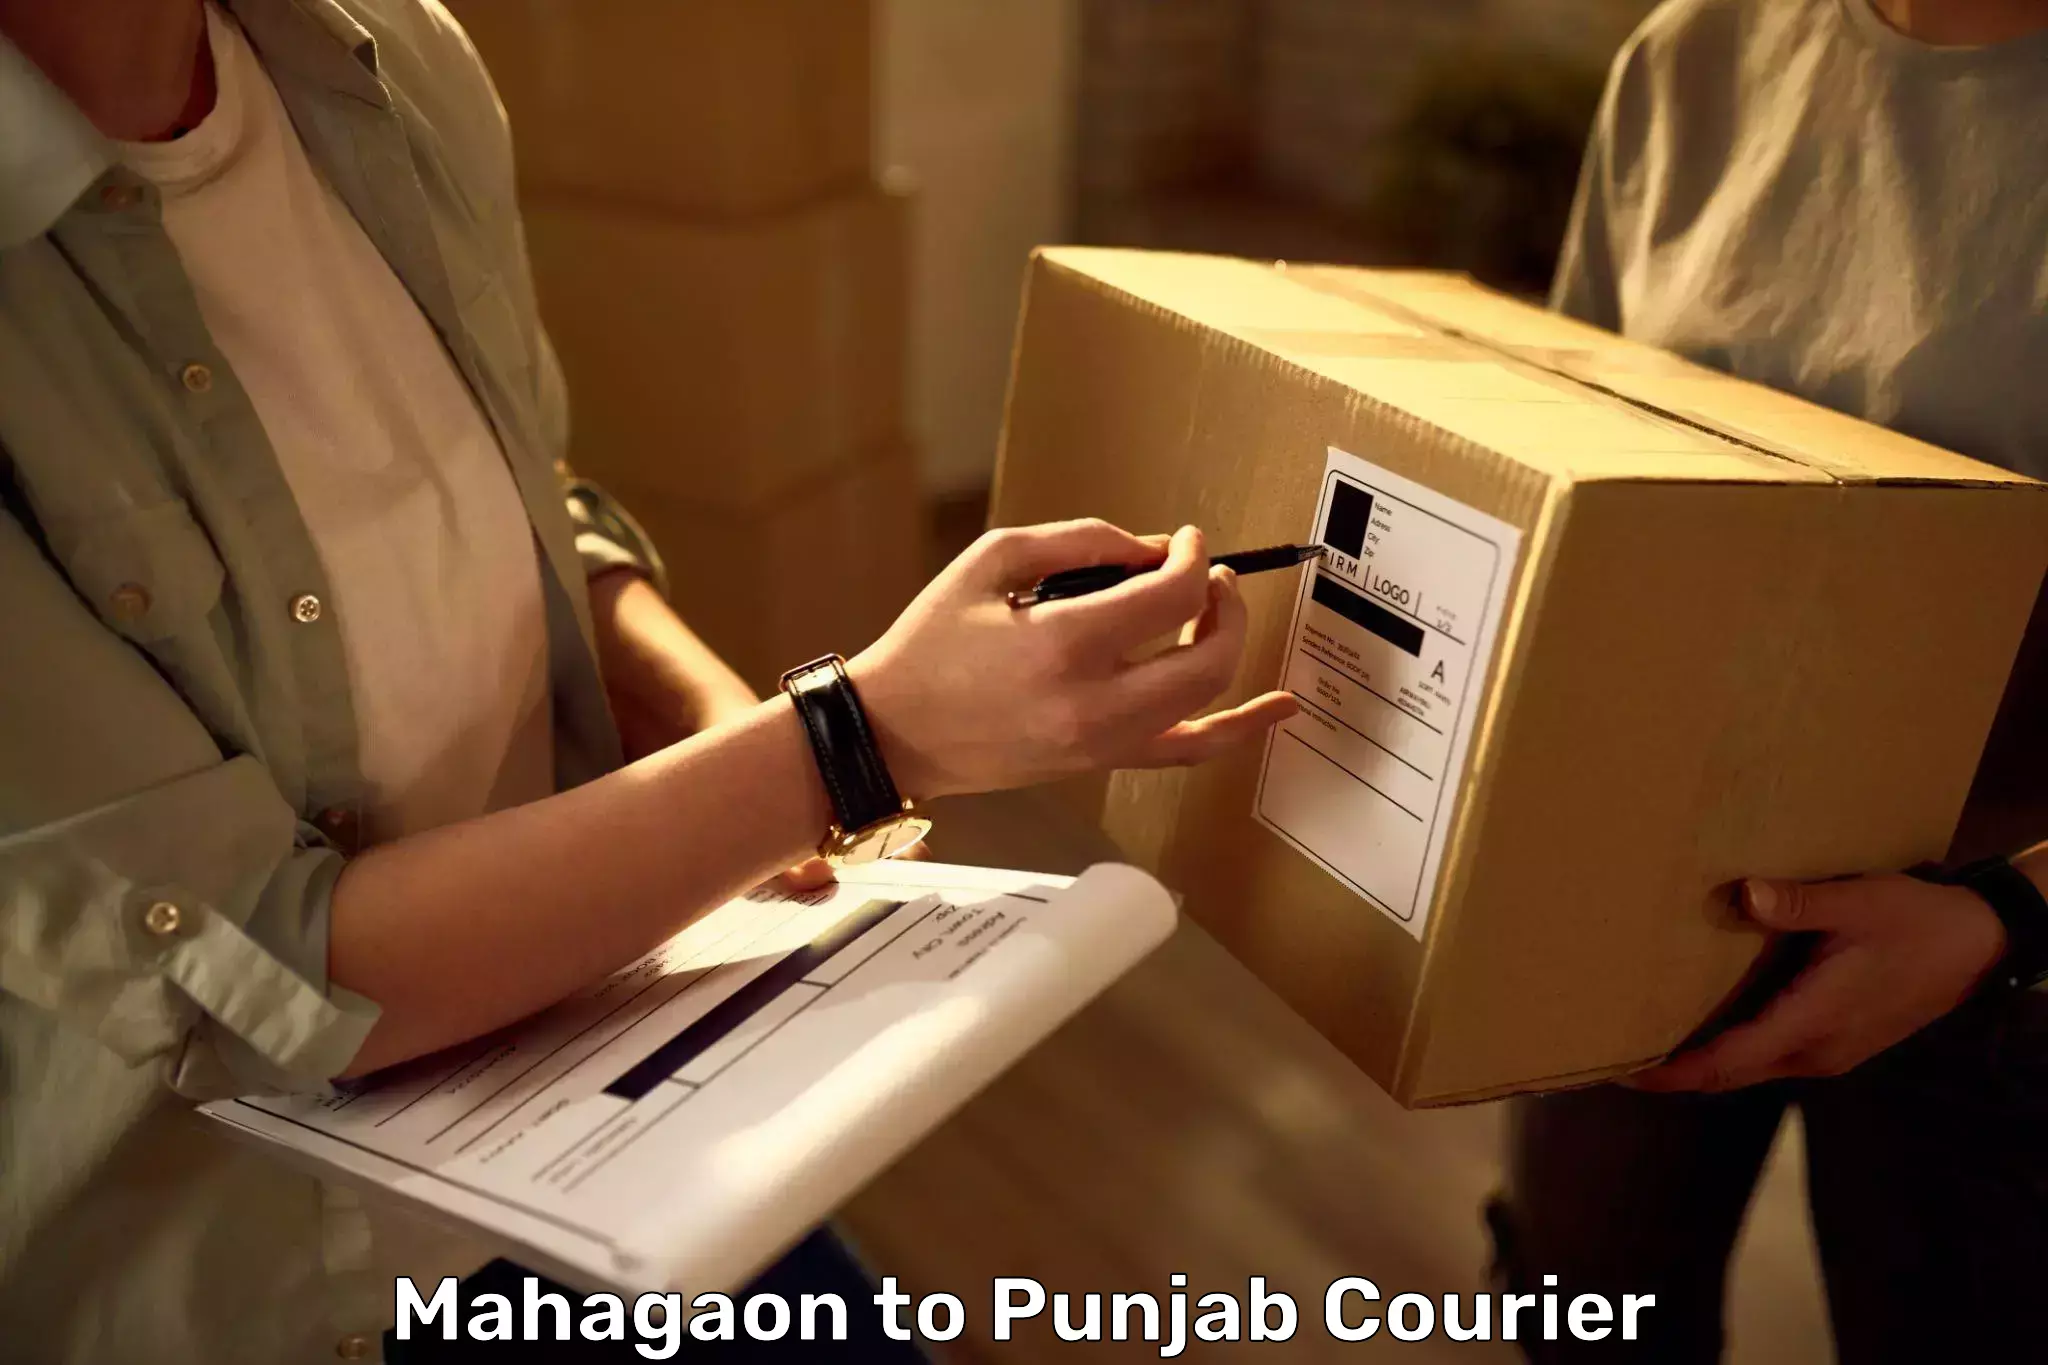 Baggage shipping experts Mahagaon to Punjab